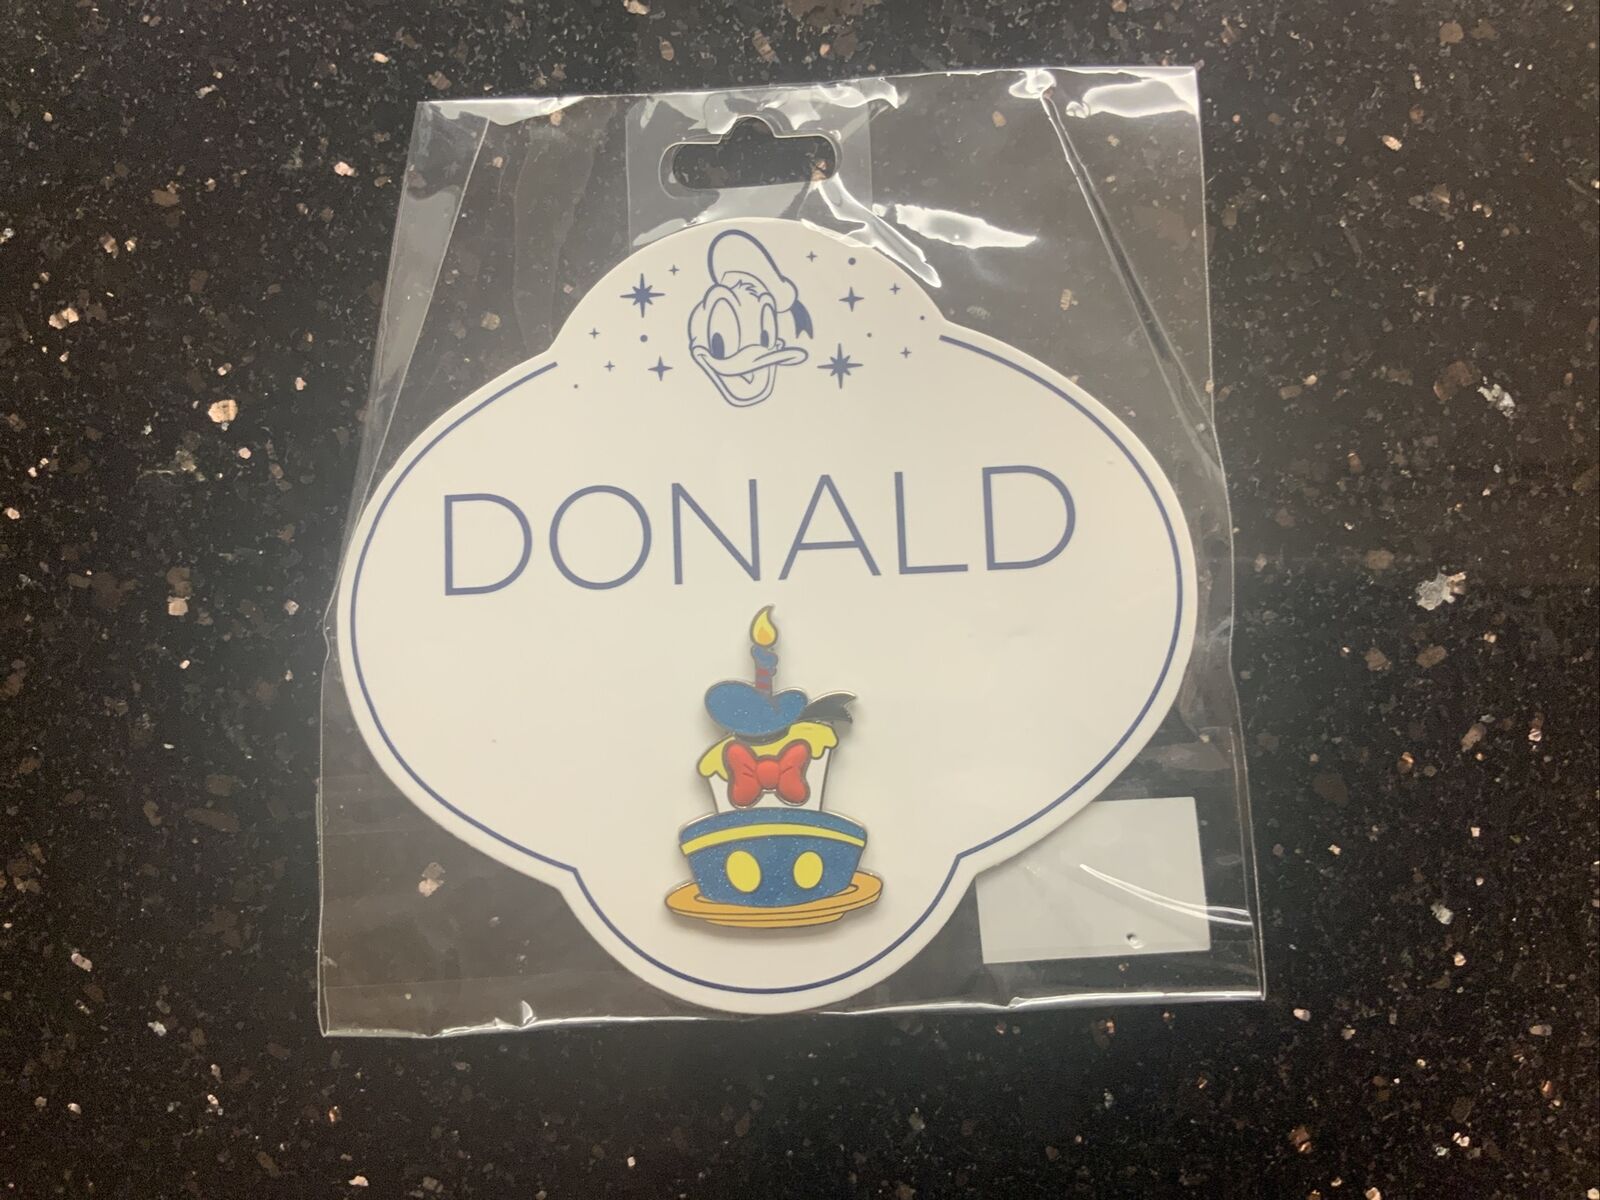 Donald Duck 85th Anniversary Birthday Cake Disney Pin (b)